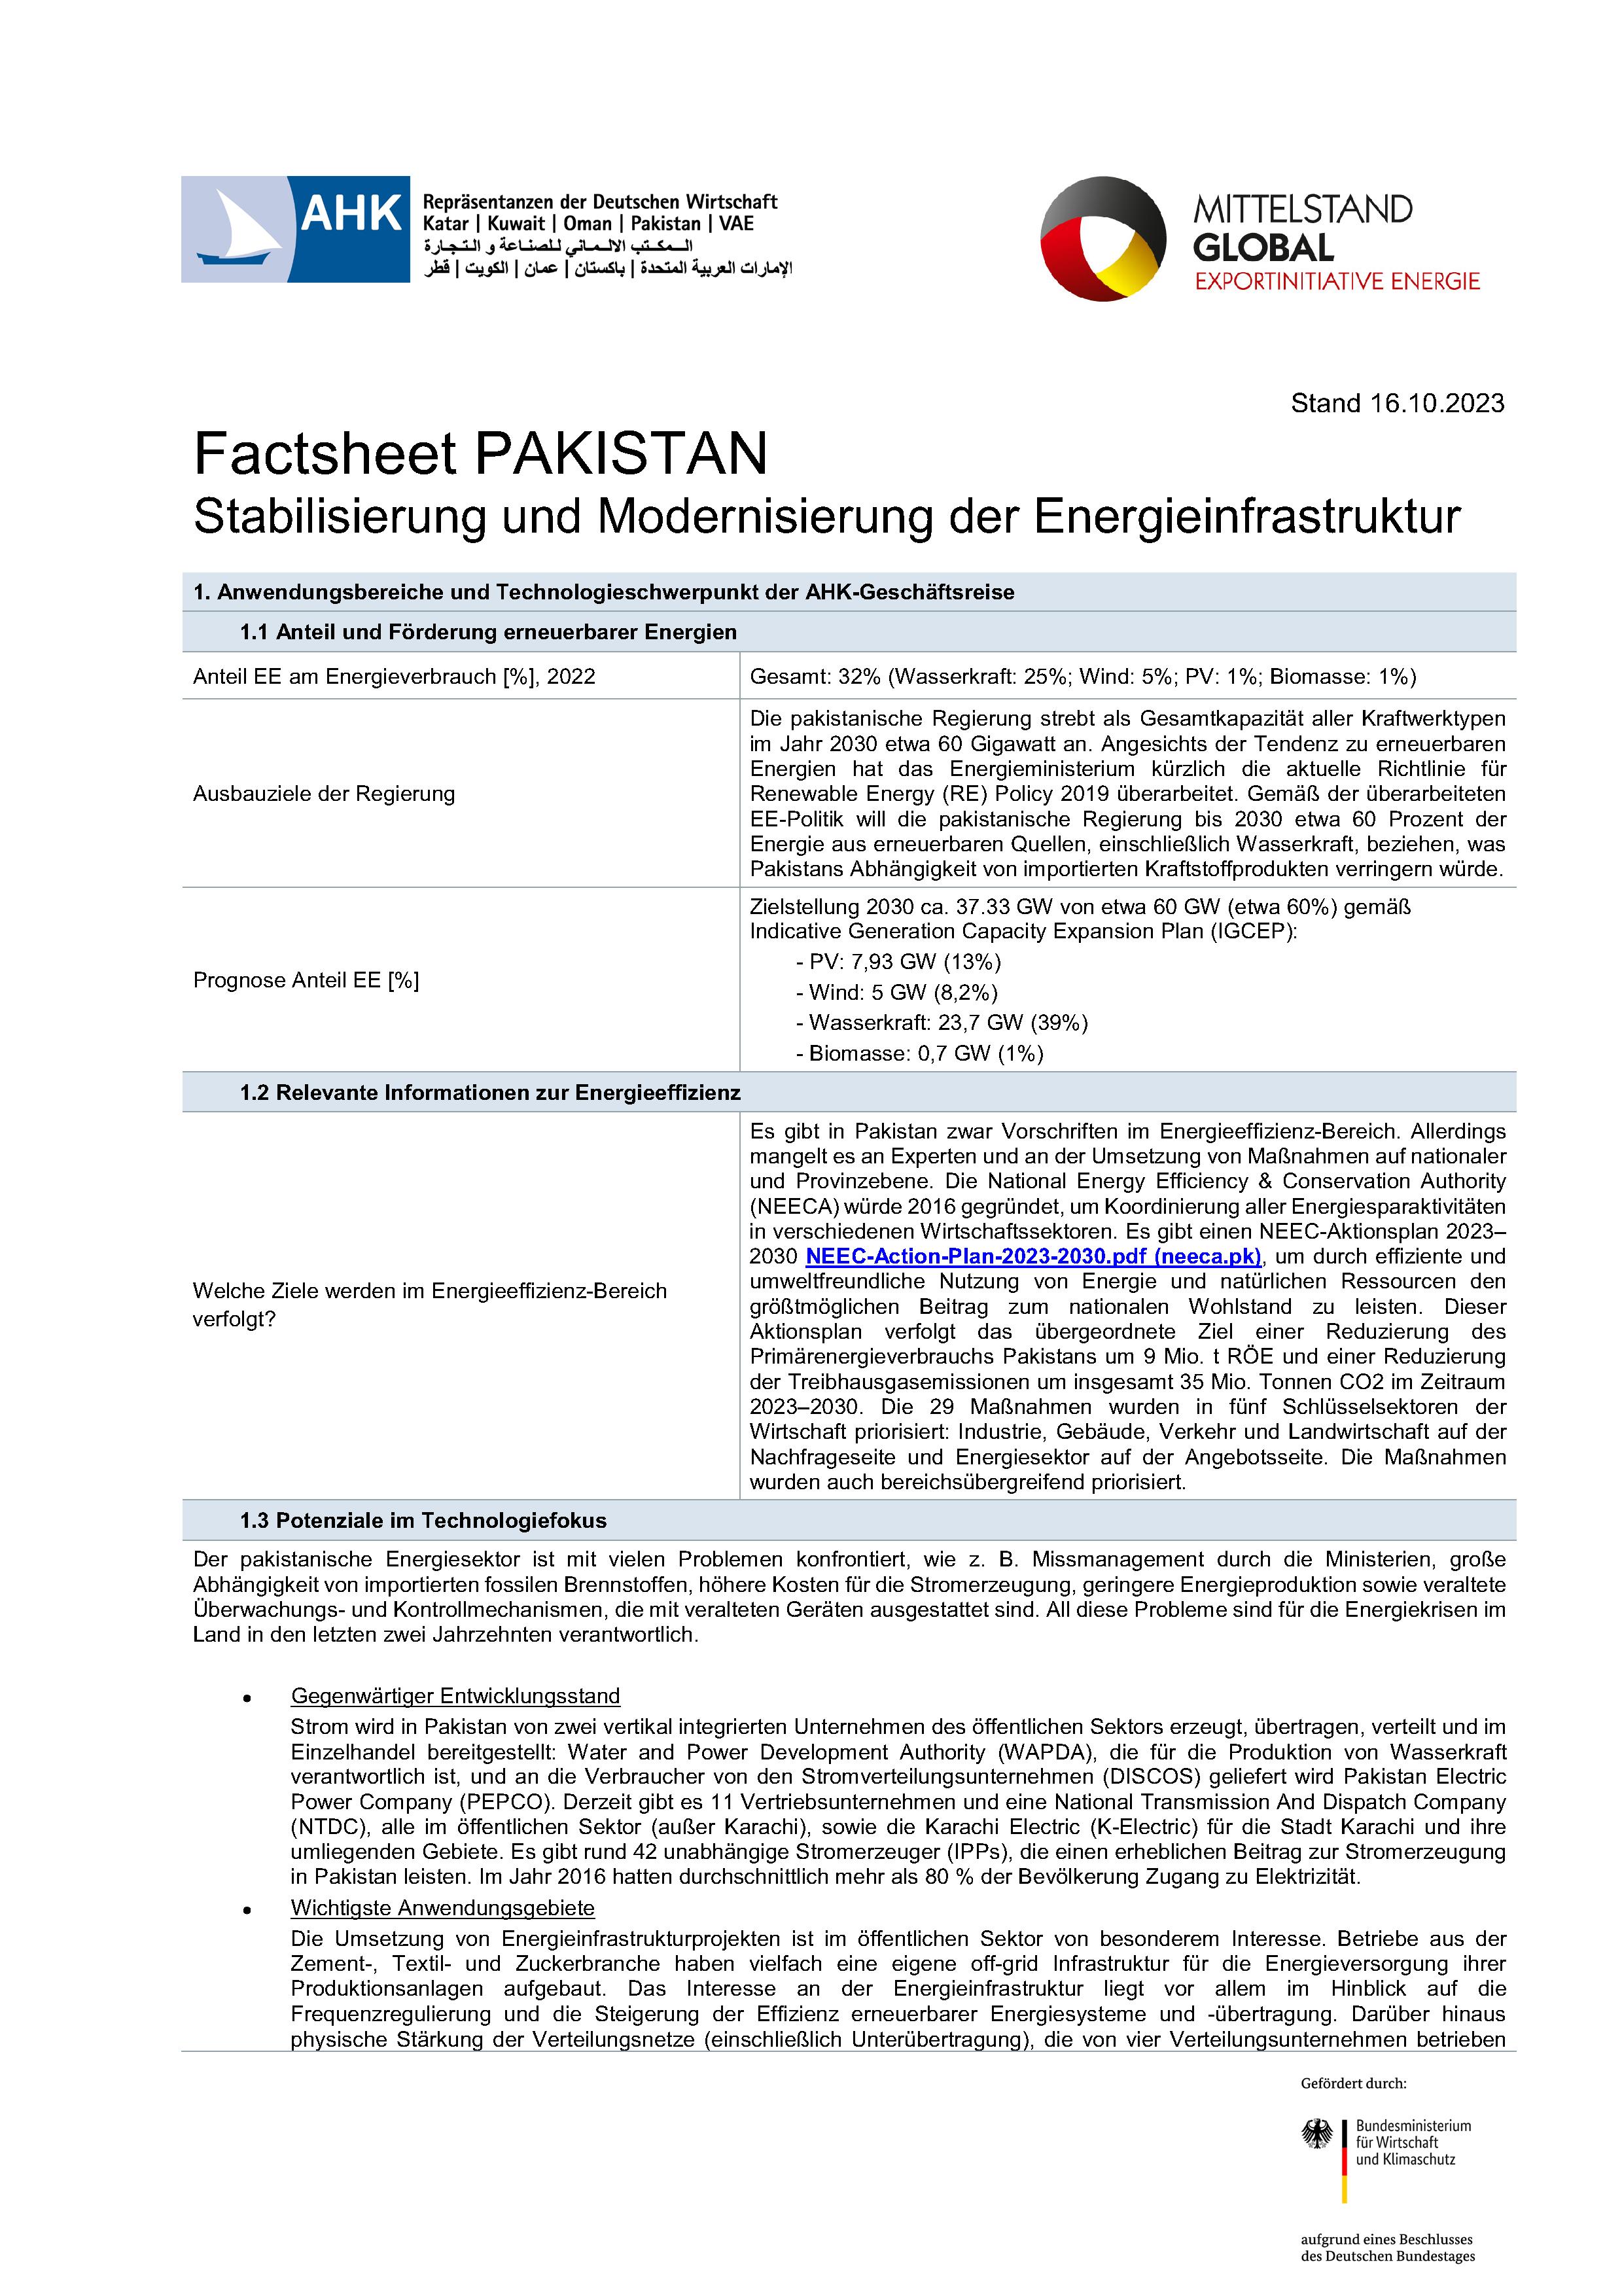 Factsheet Pakistan: Stabilisierung und Modernisierung der Energieinfrastruktur